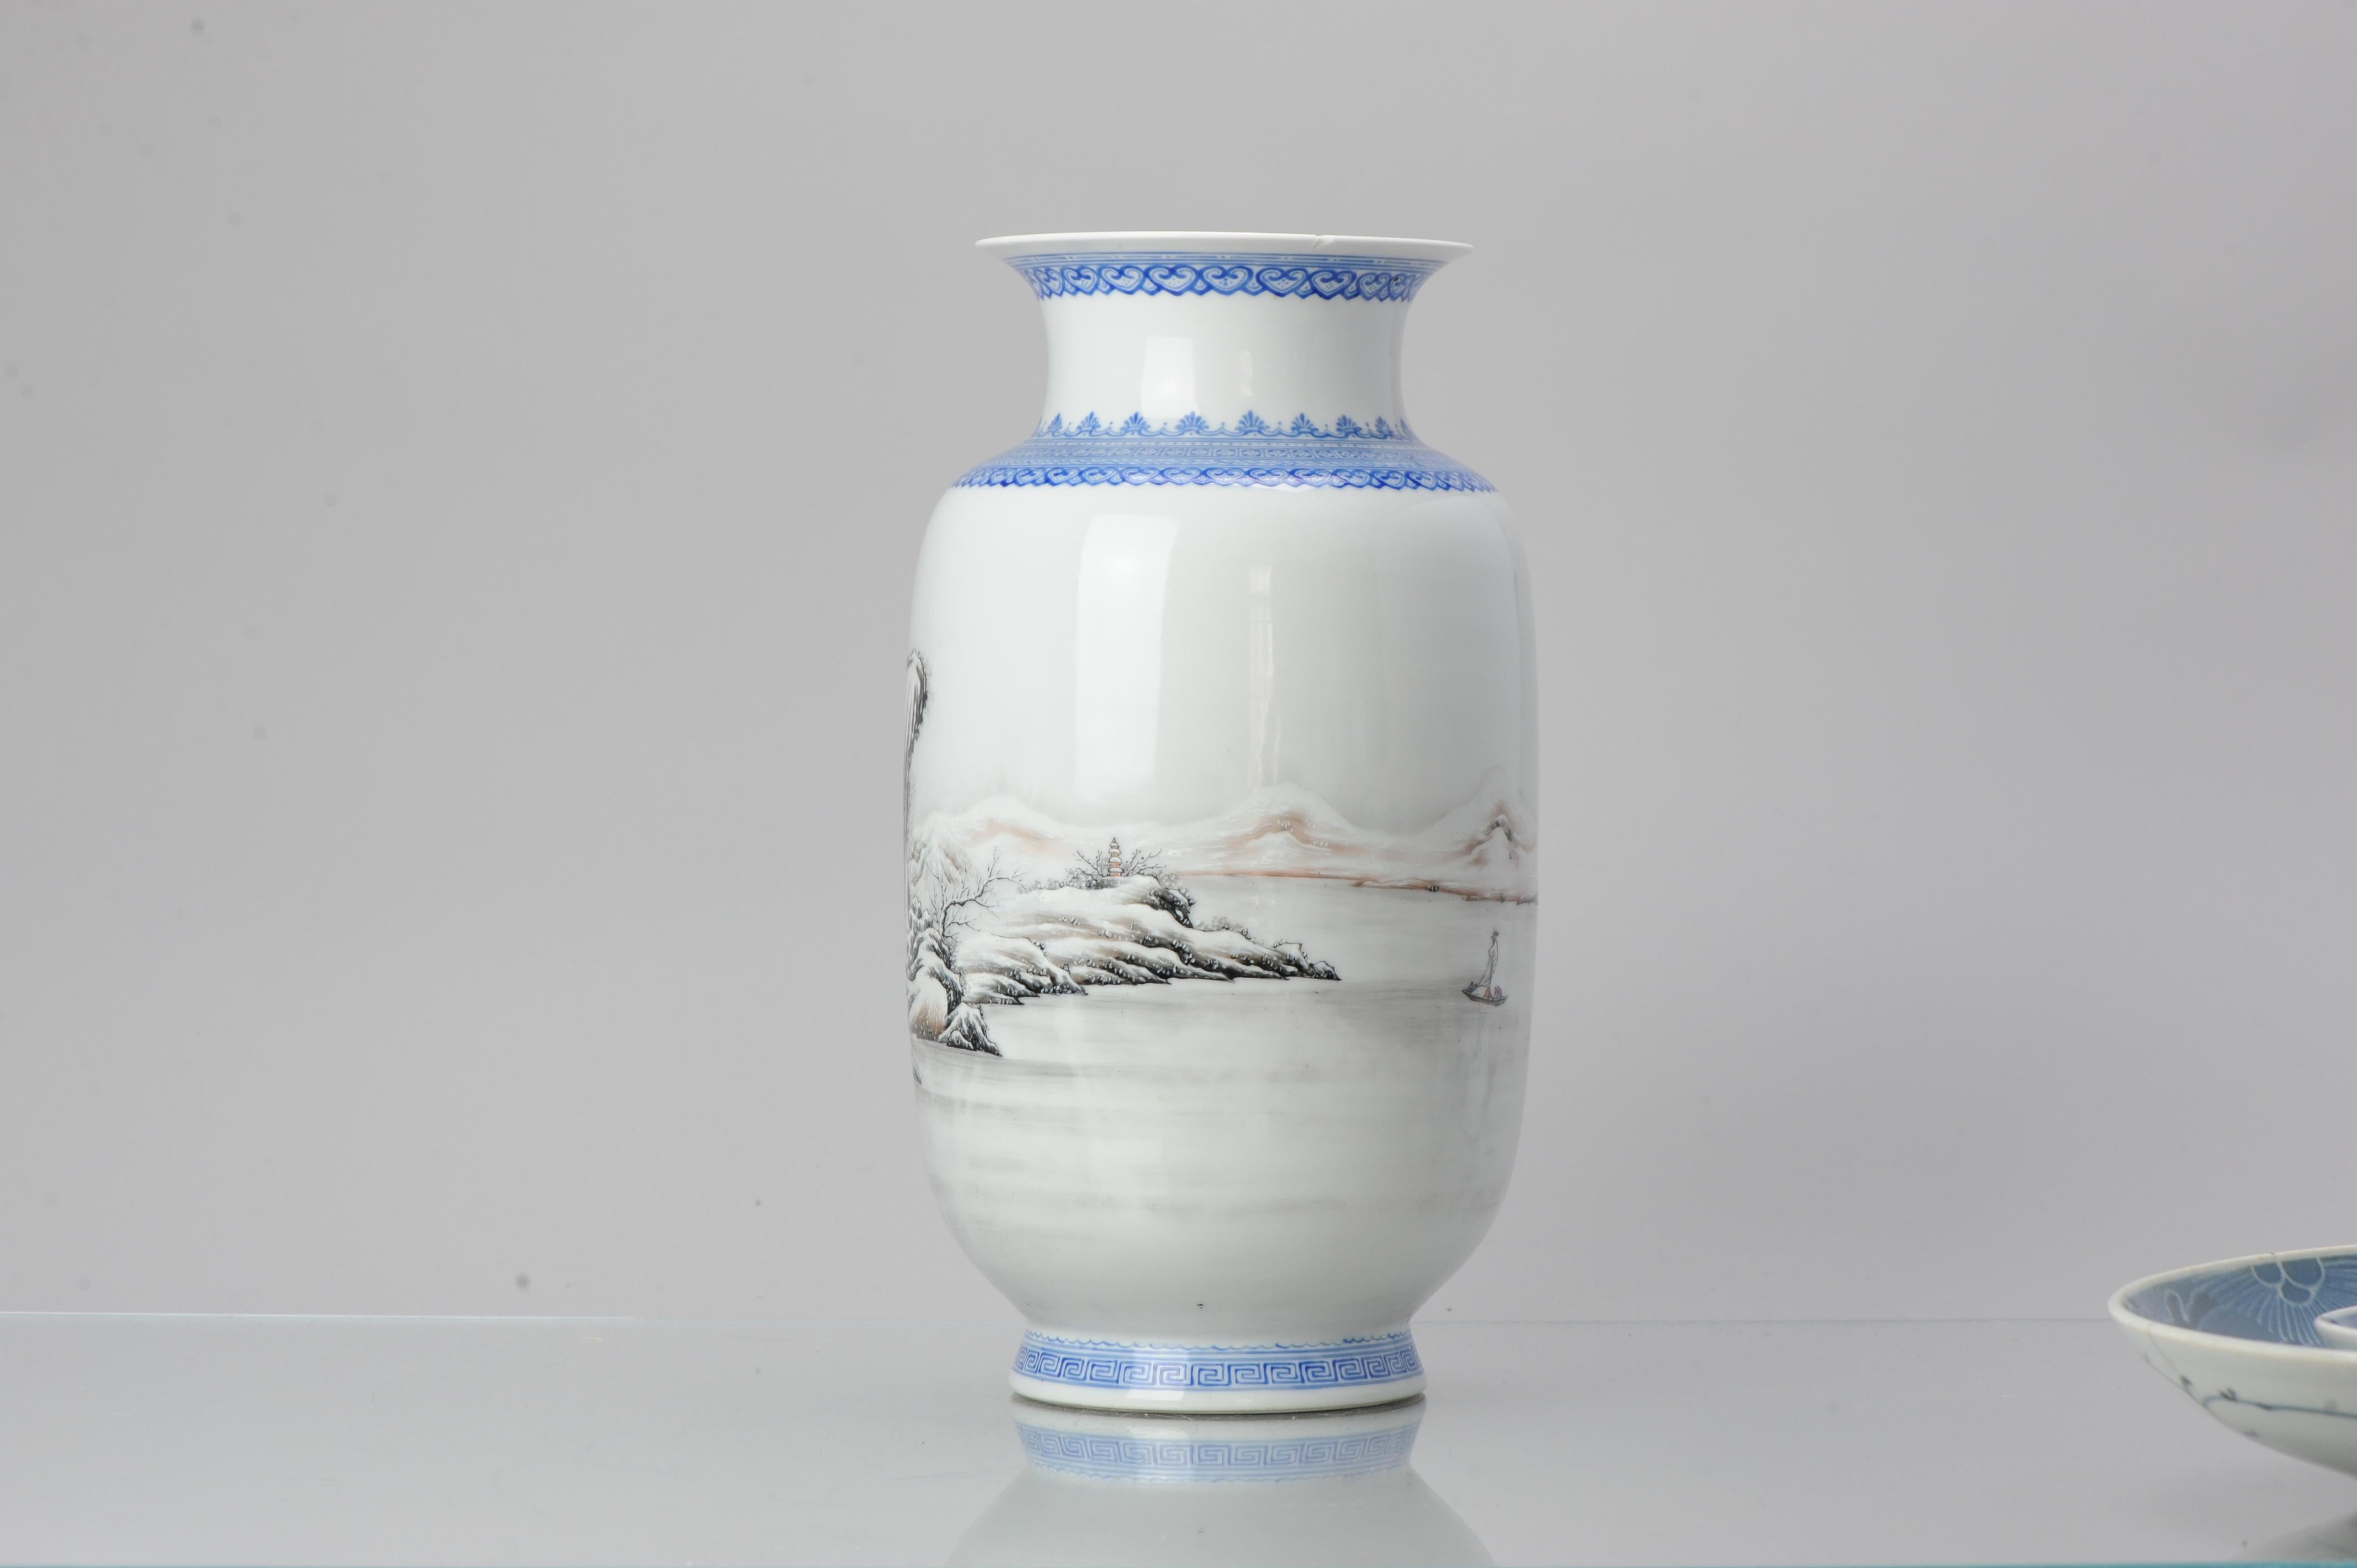 qianlong porcelain vase